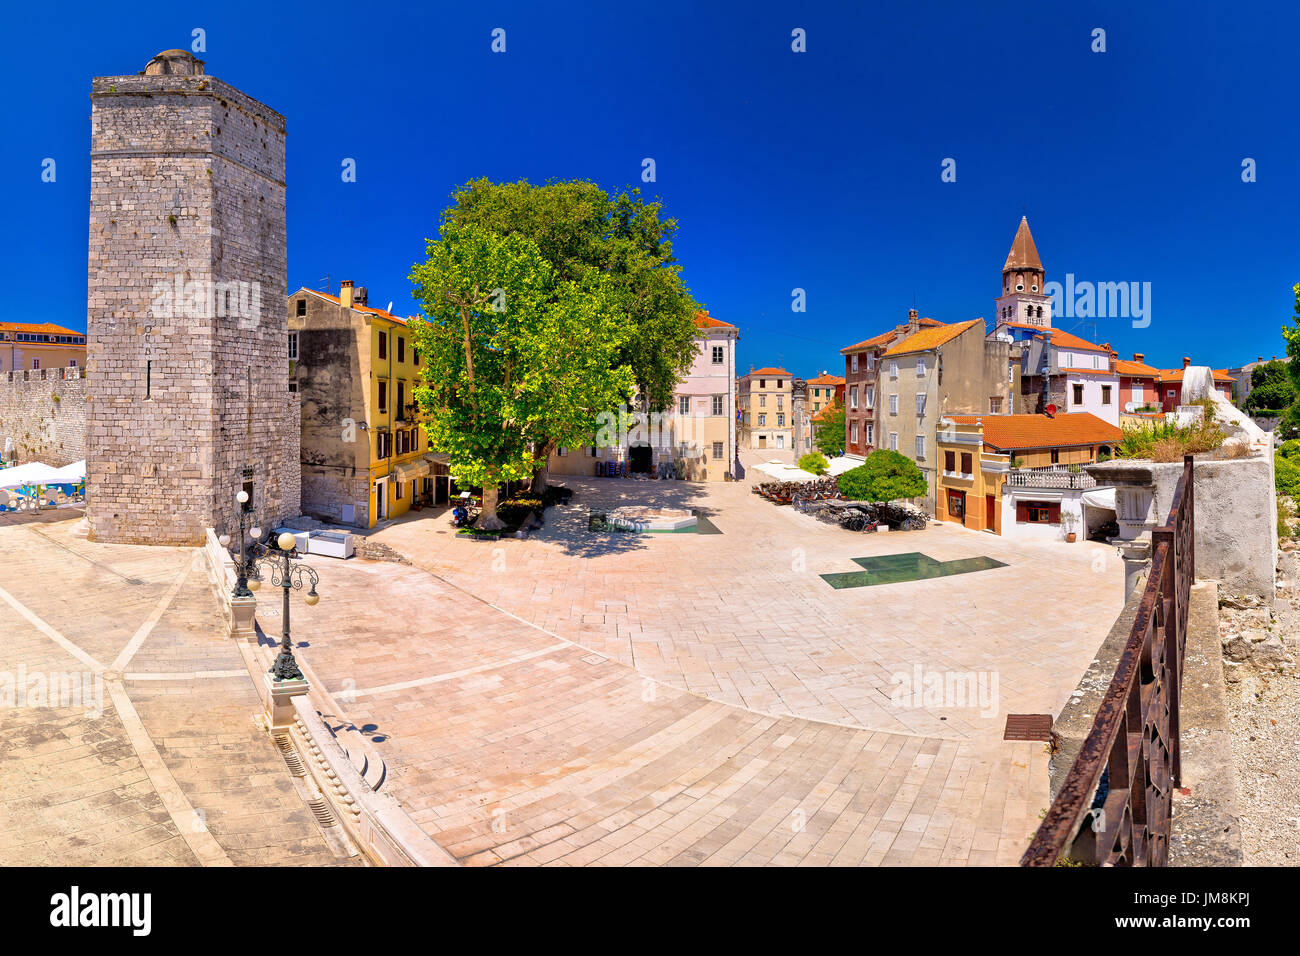 Zadar Five wells square and historic architecture panoramic view, Dalmatia, Croatia Stock Photo